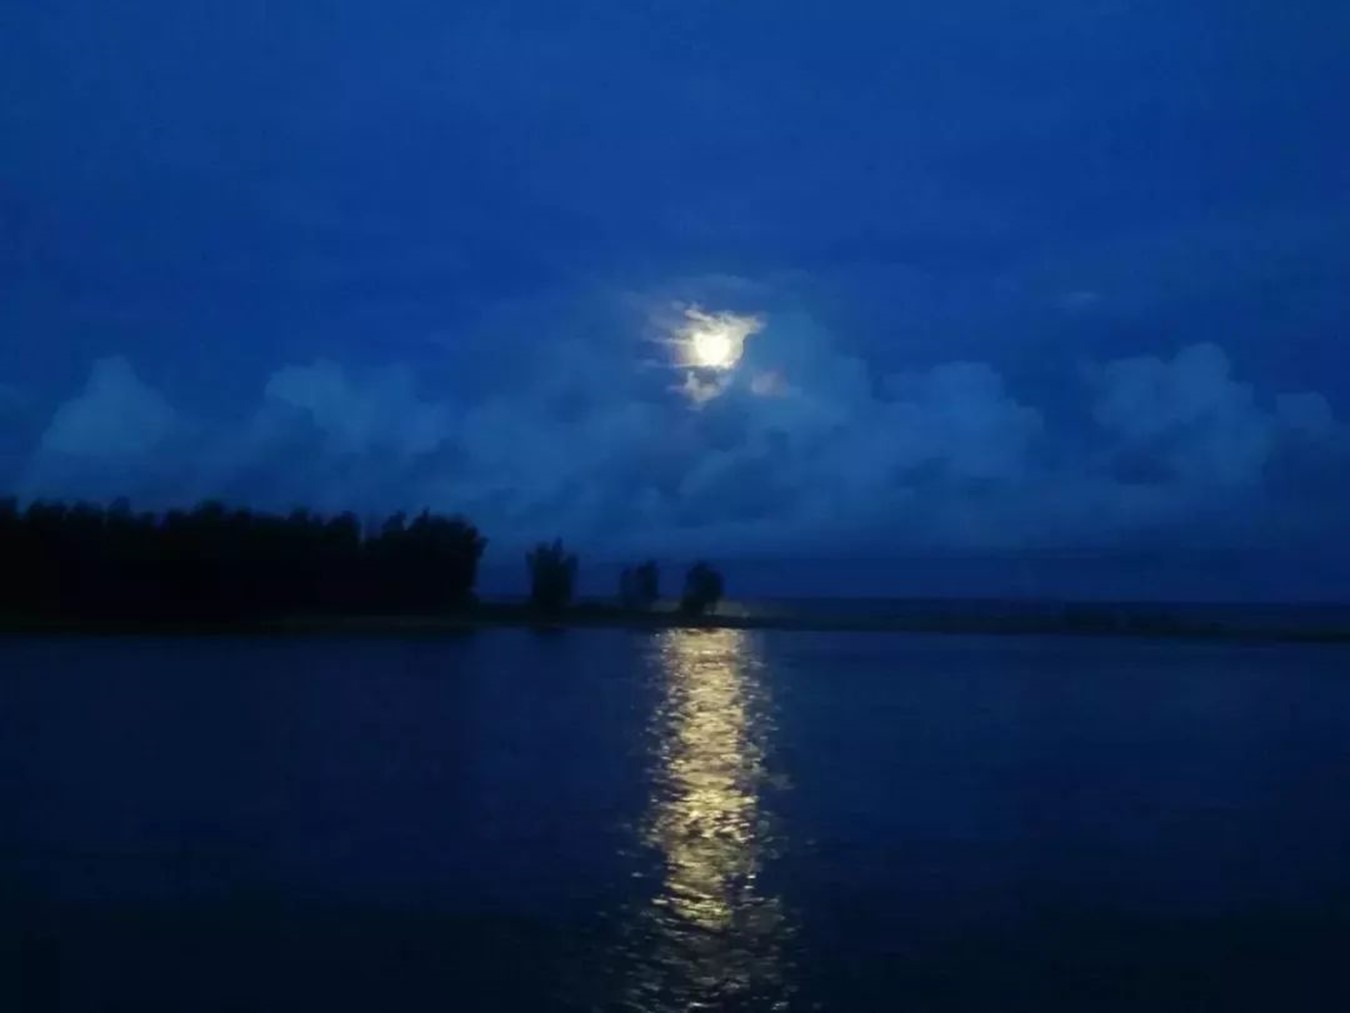 南沙海上明月图片